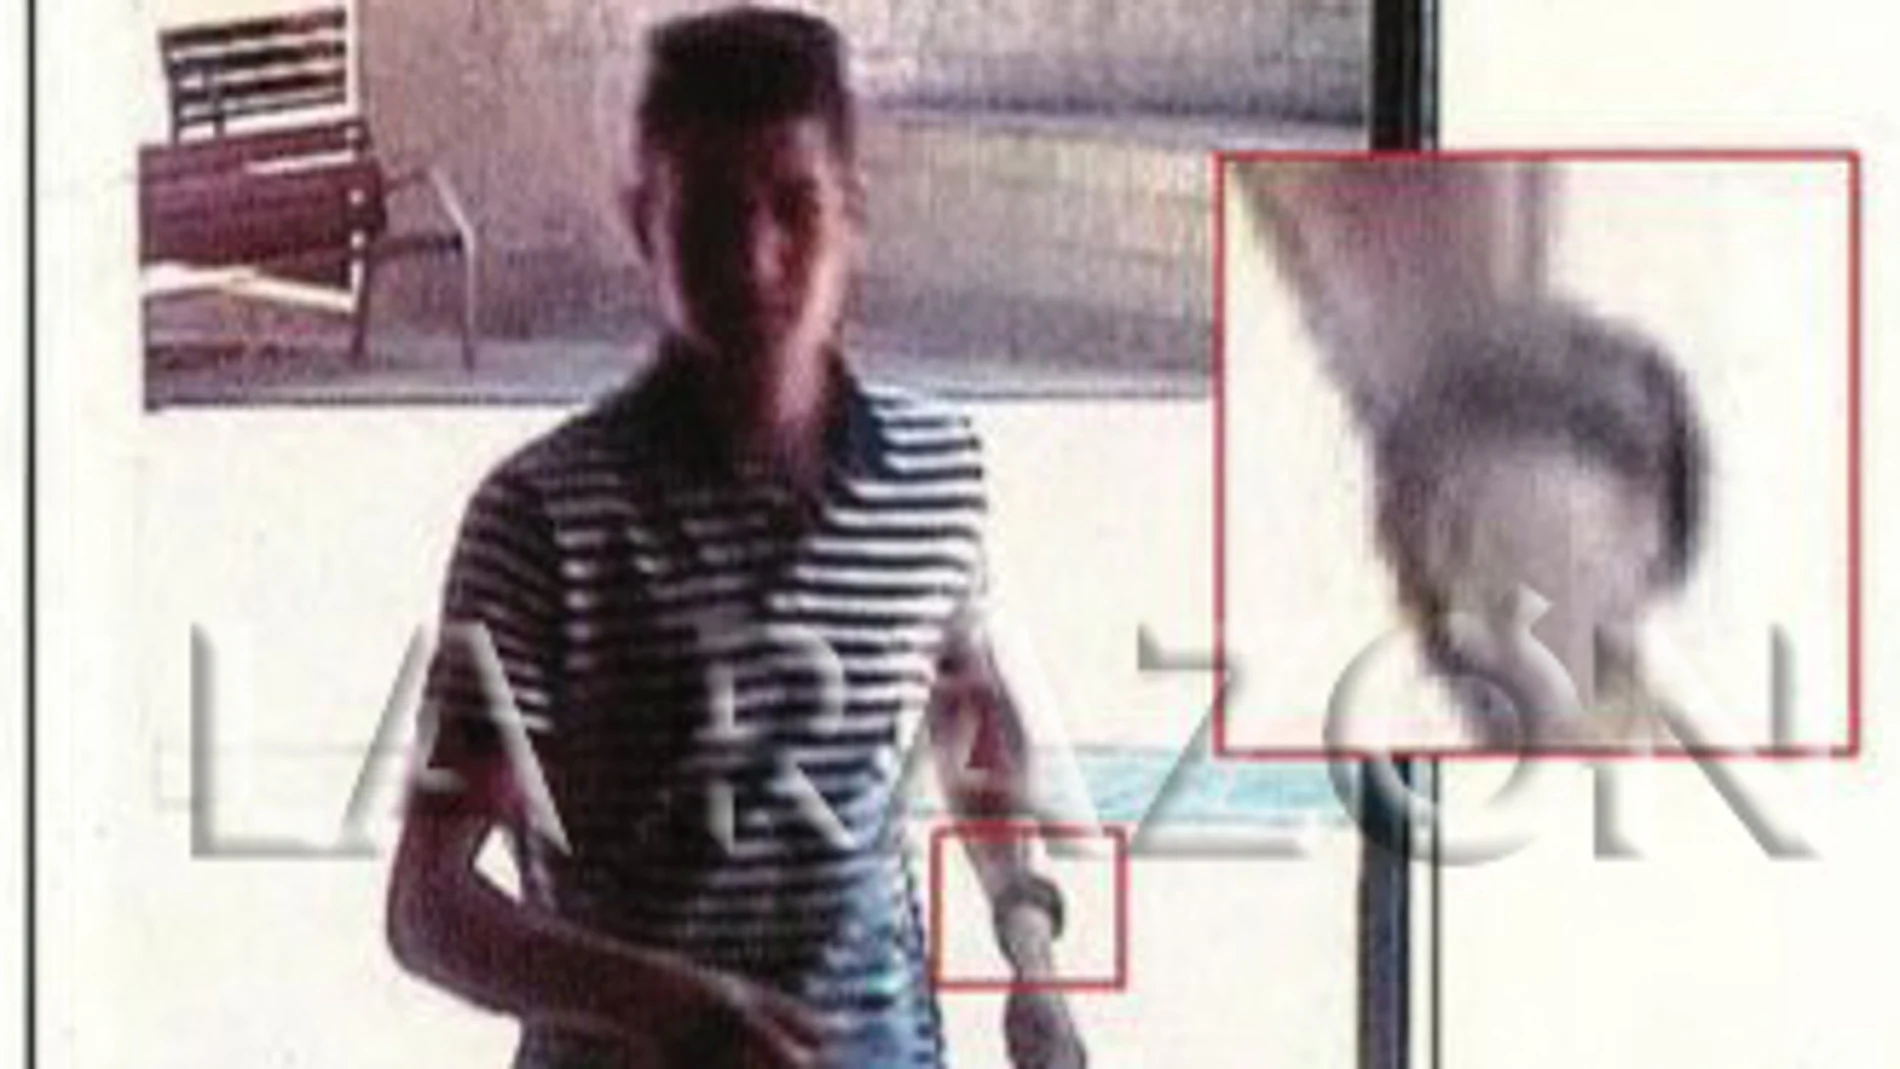 Los Mossos identificaron diversos objetos personales que llevaba Younnes Abouyaaqoub cuando fue abatido en las imágenes grabadas al terrorista durante su huida